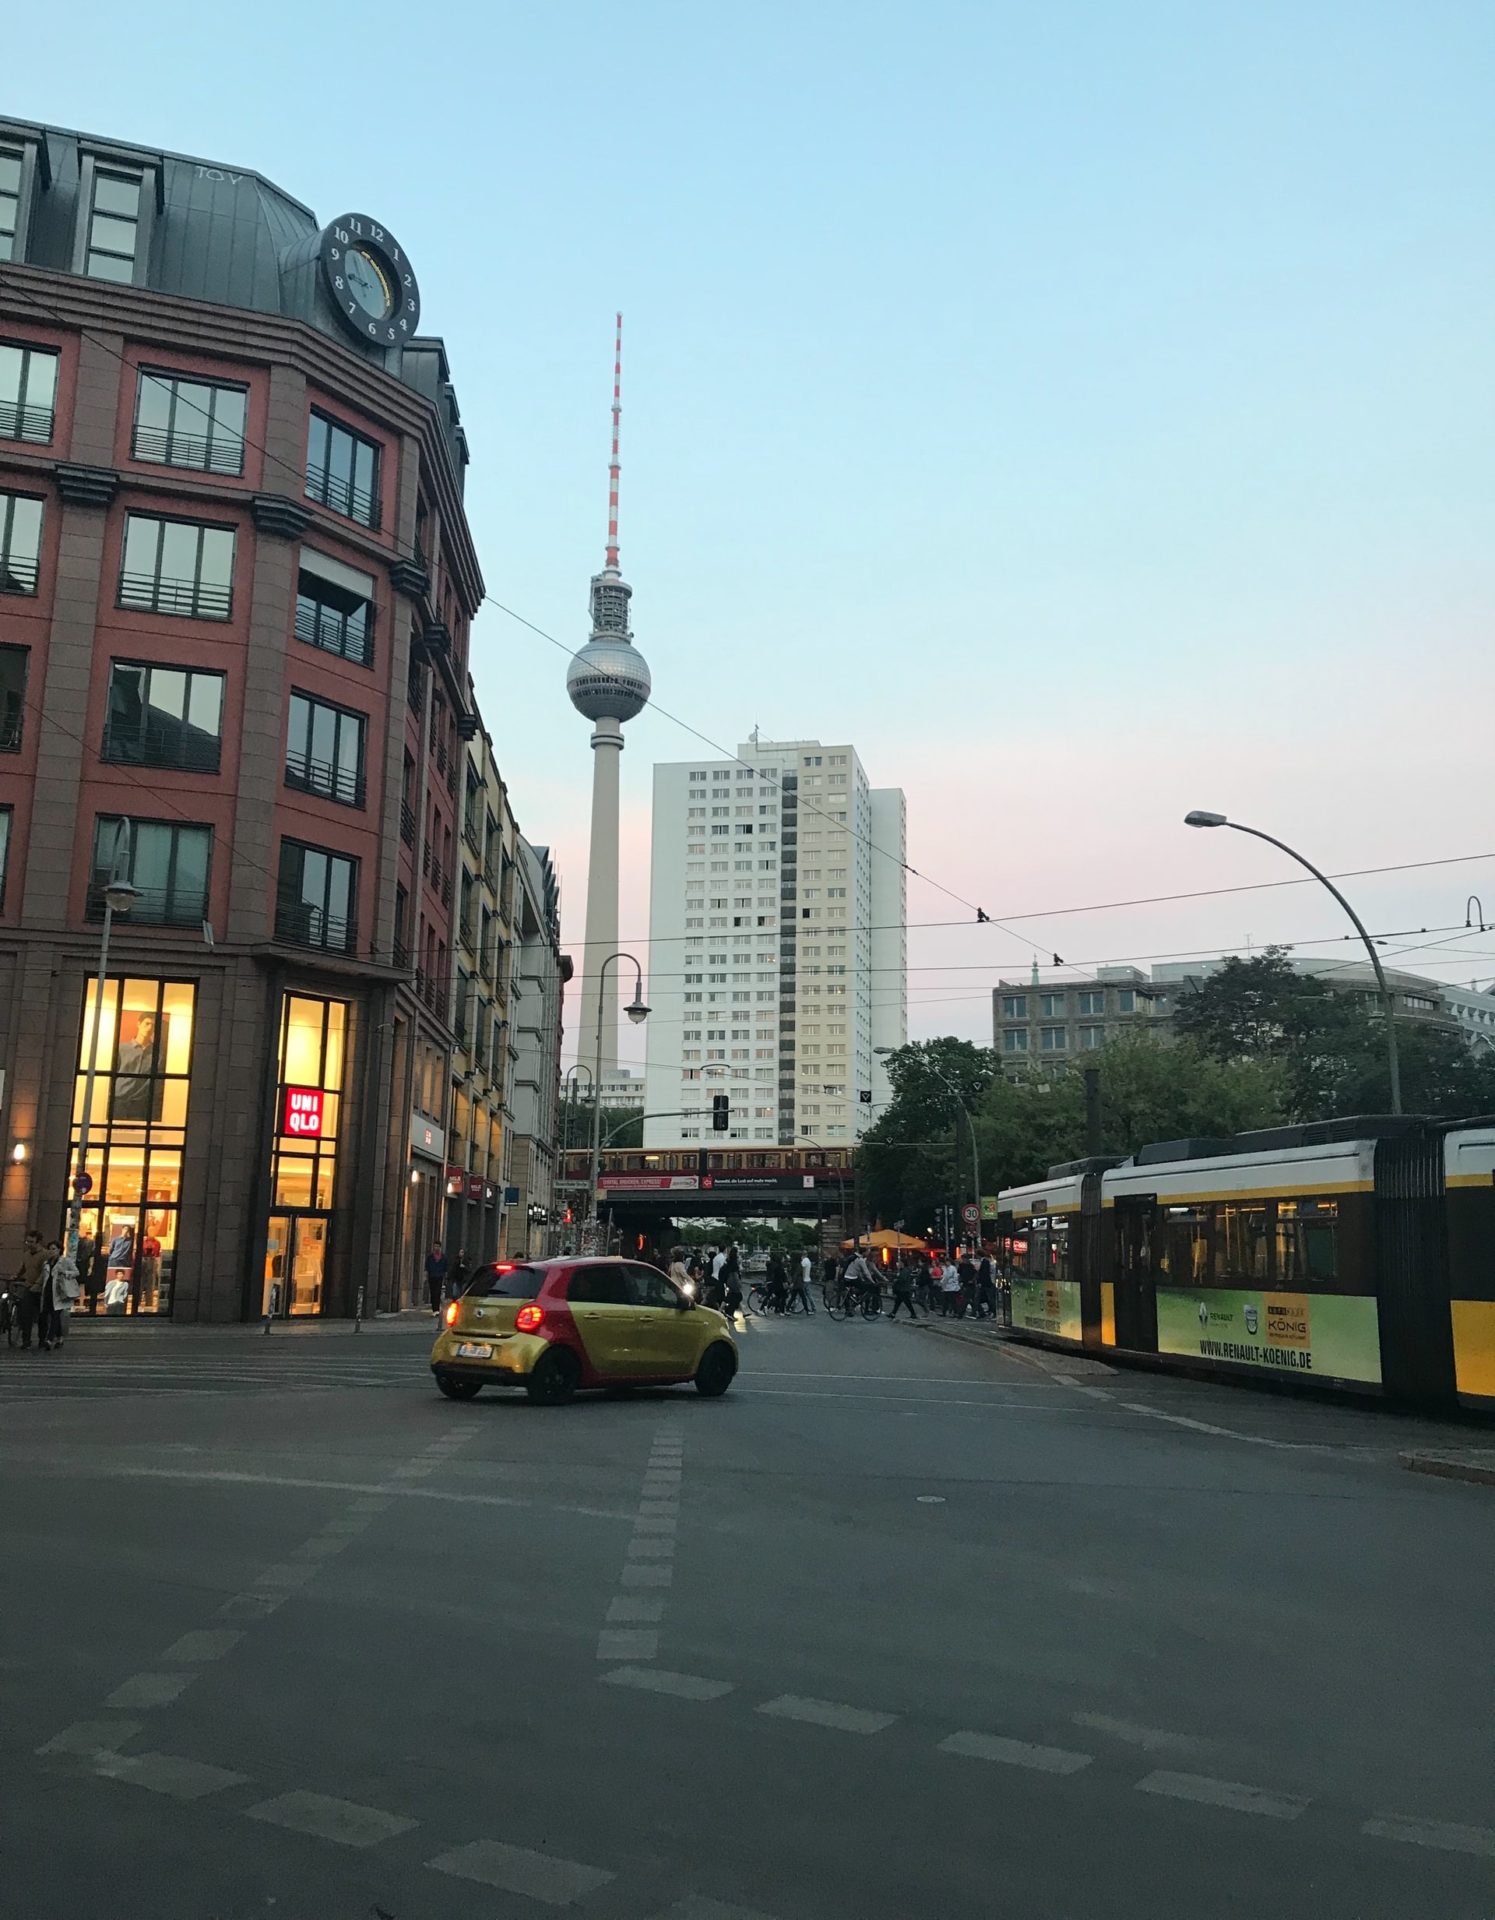 Berlin 14 spannende Infos für deinen Urlaub in der